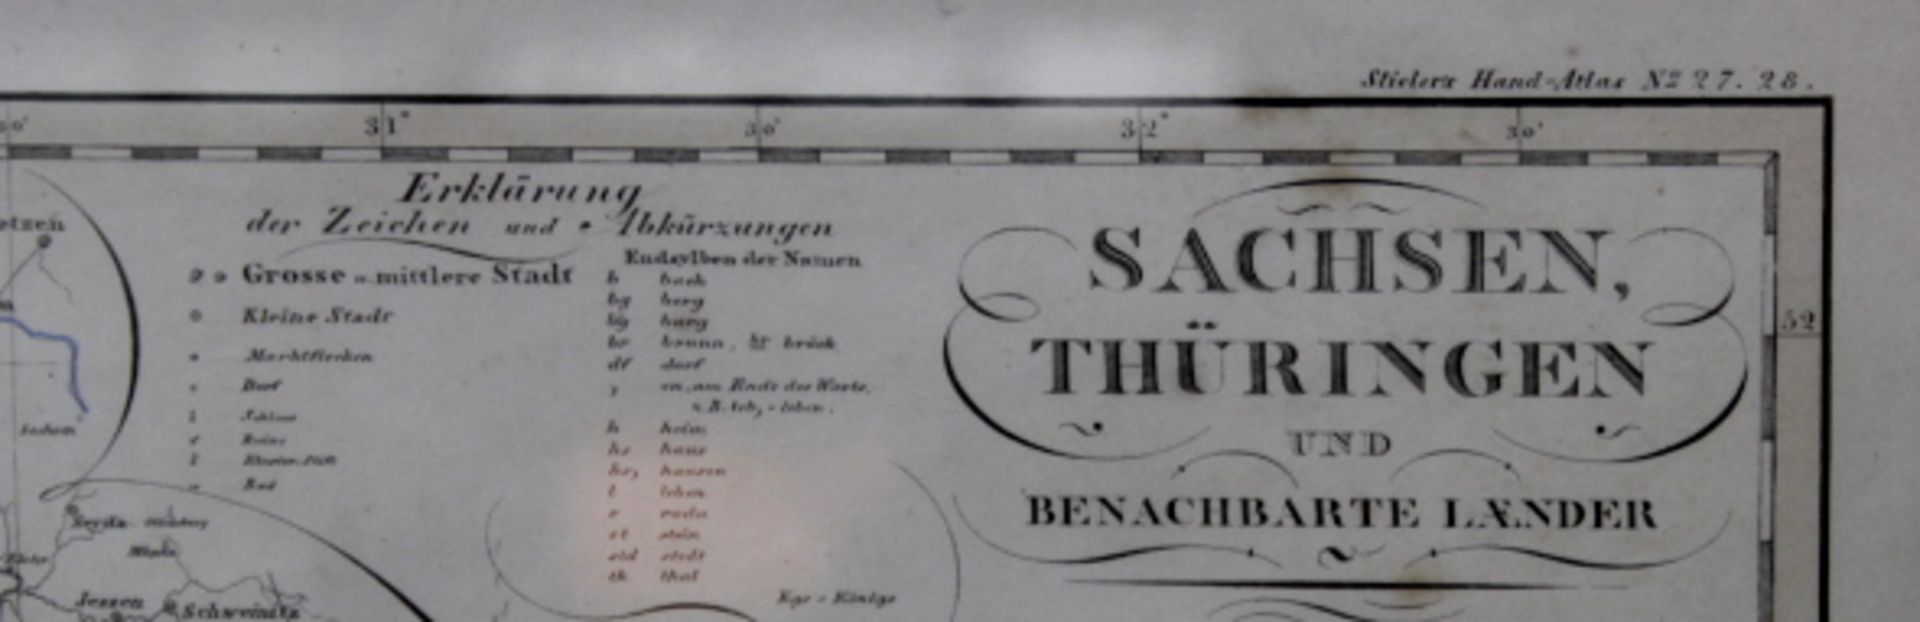 Sachsen,Thüringen,und benachbarteLänderCol.Grafik um 1830 GothaGest.von Carl Ausfeldin SchnepfenThal - Image 2 of 2